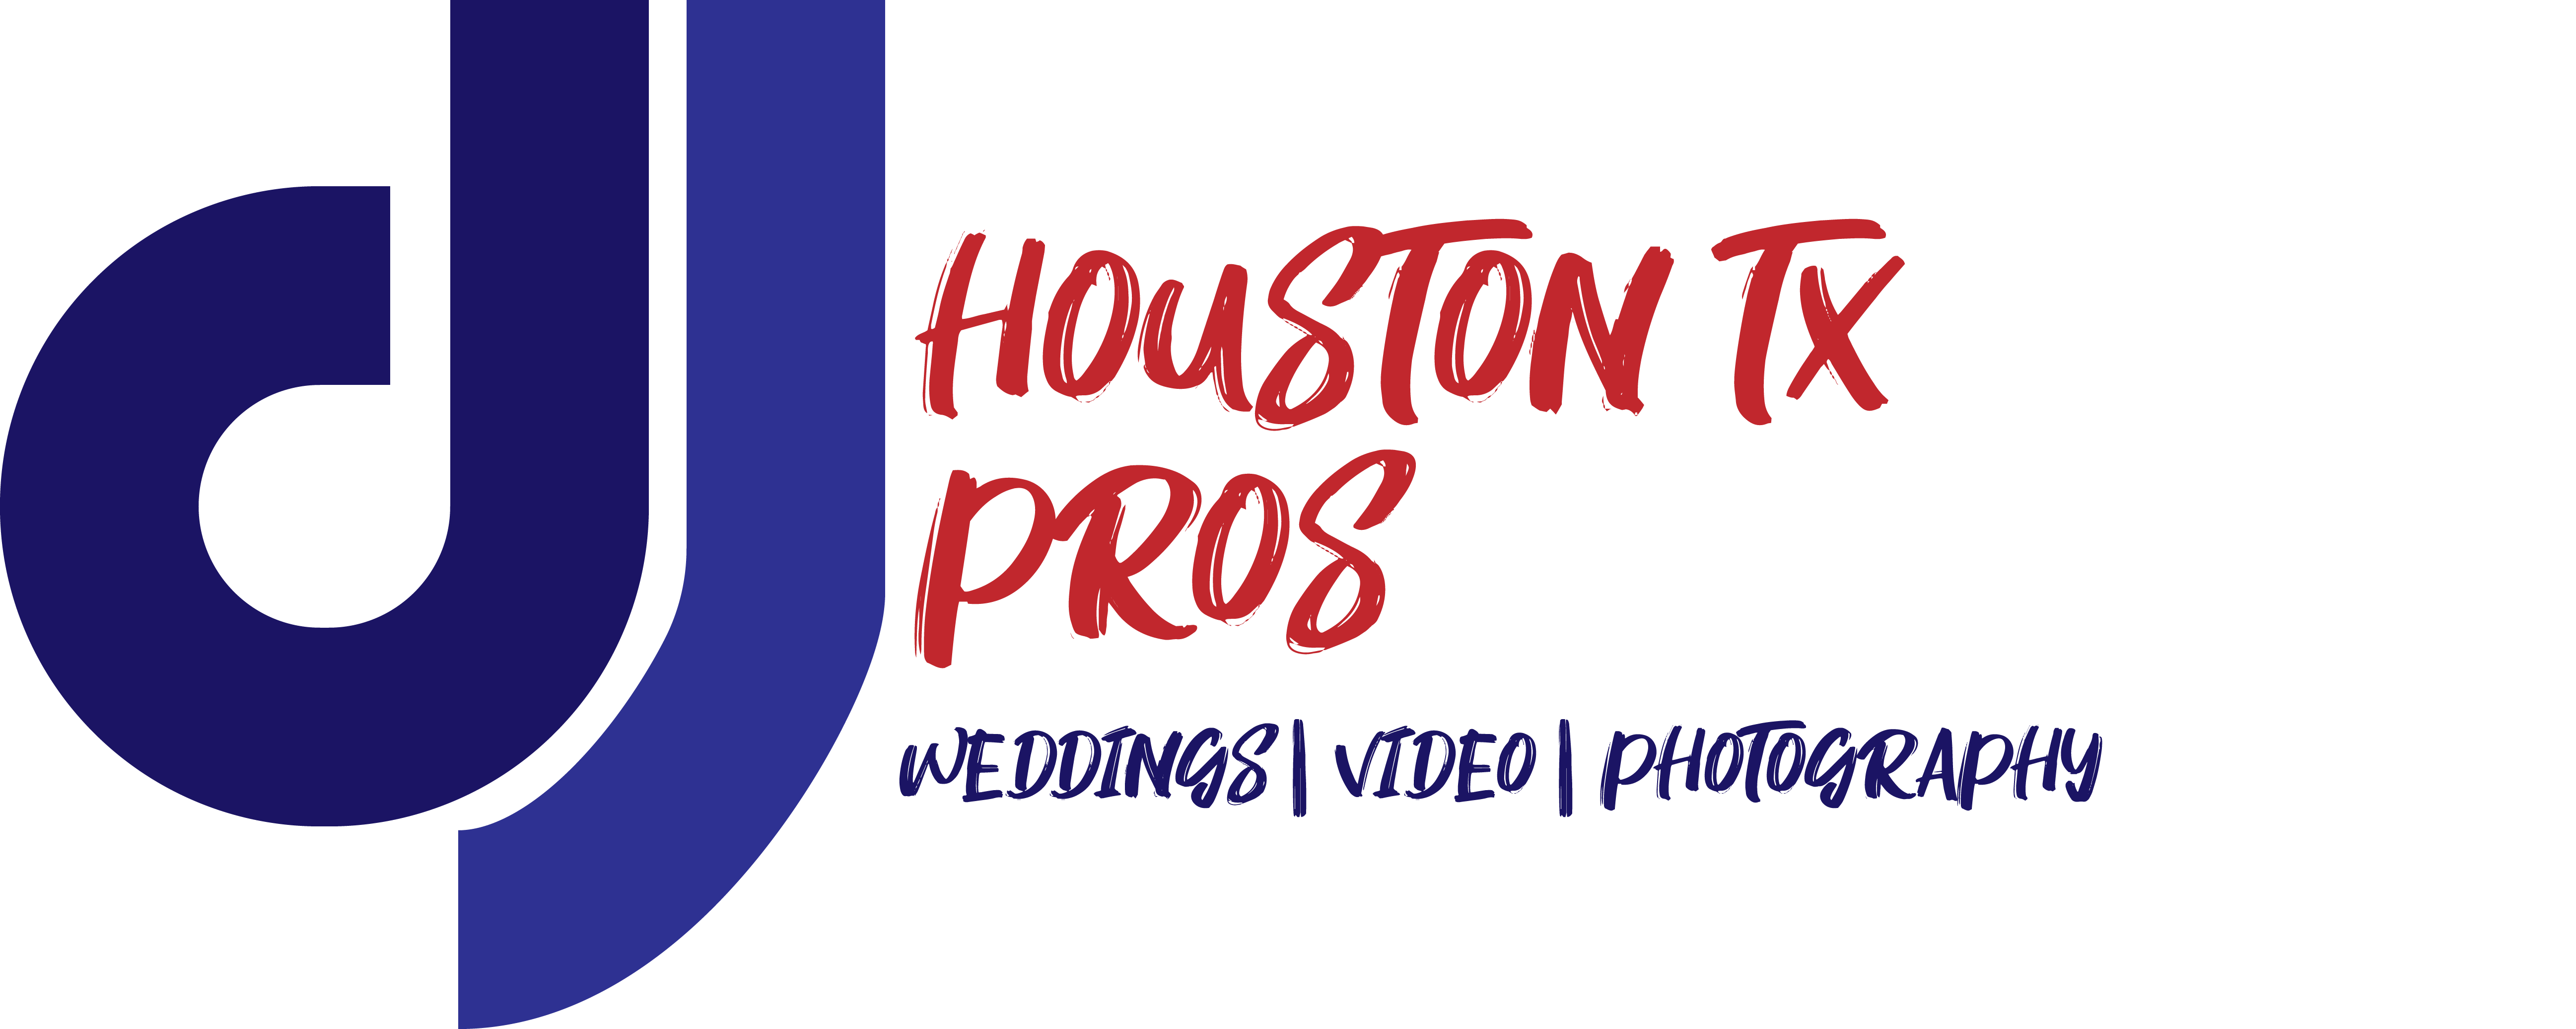 DJ Houston Texas Pros